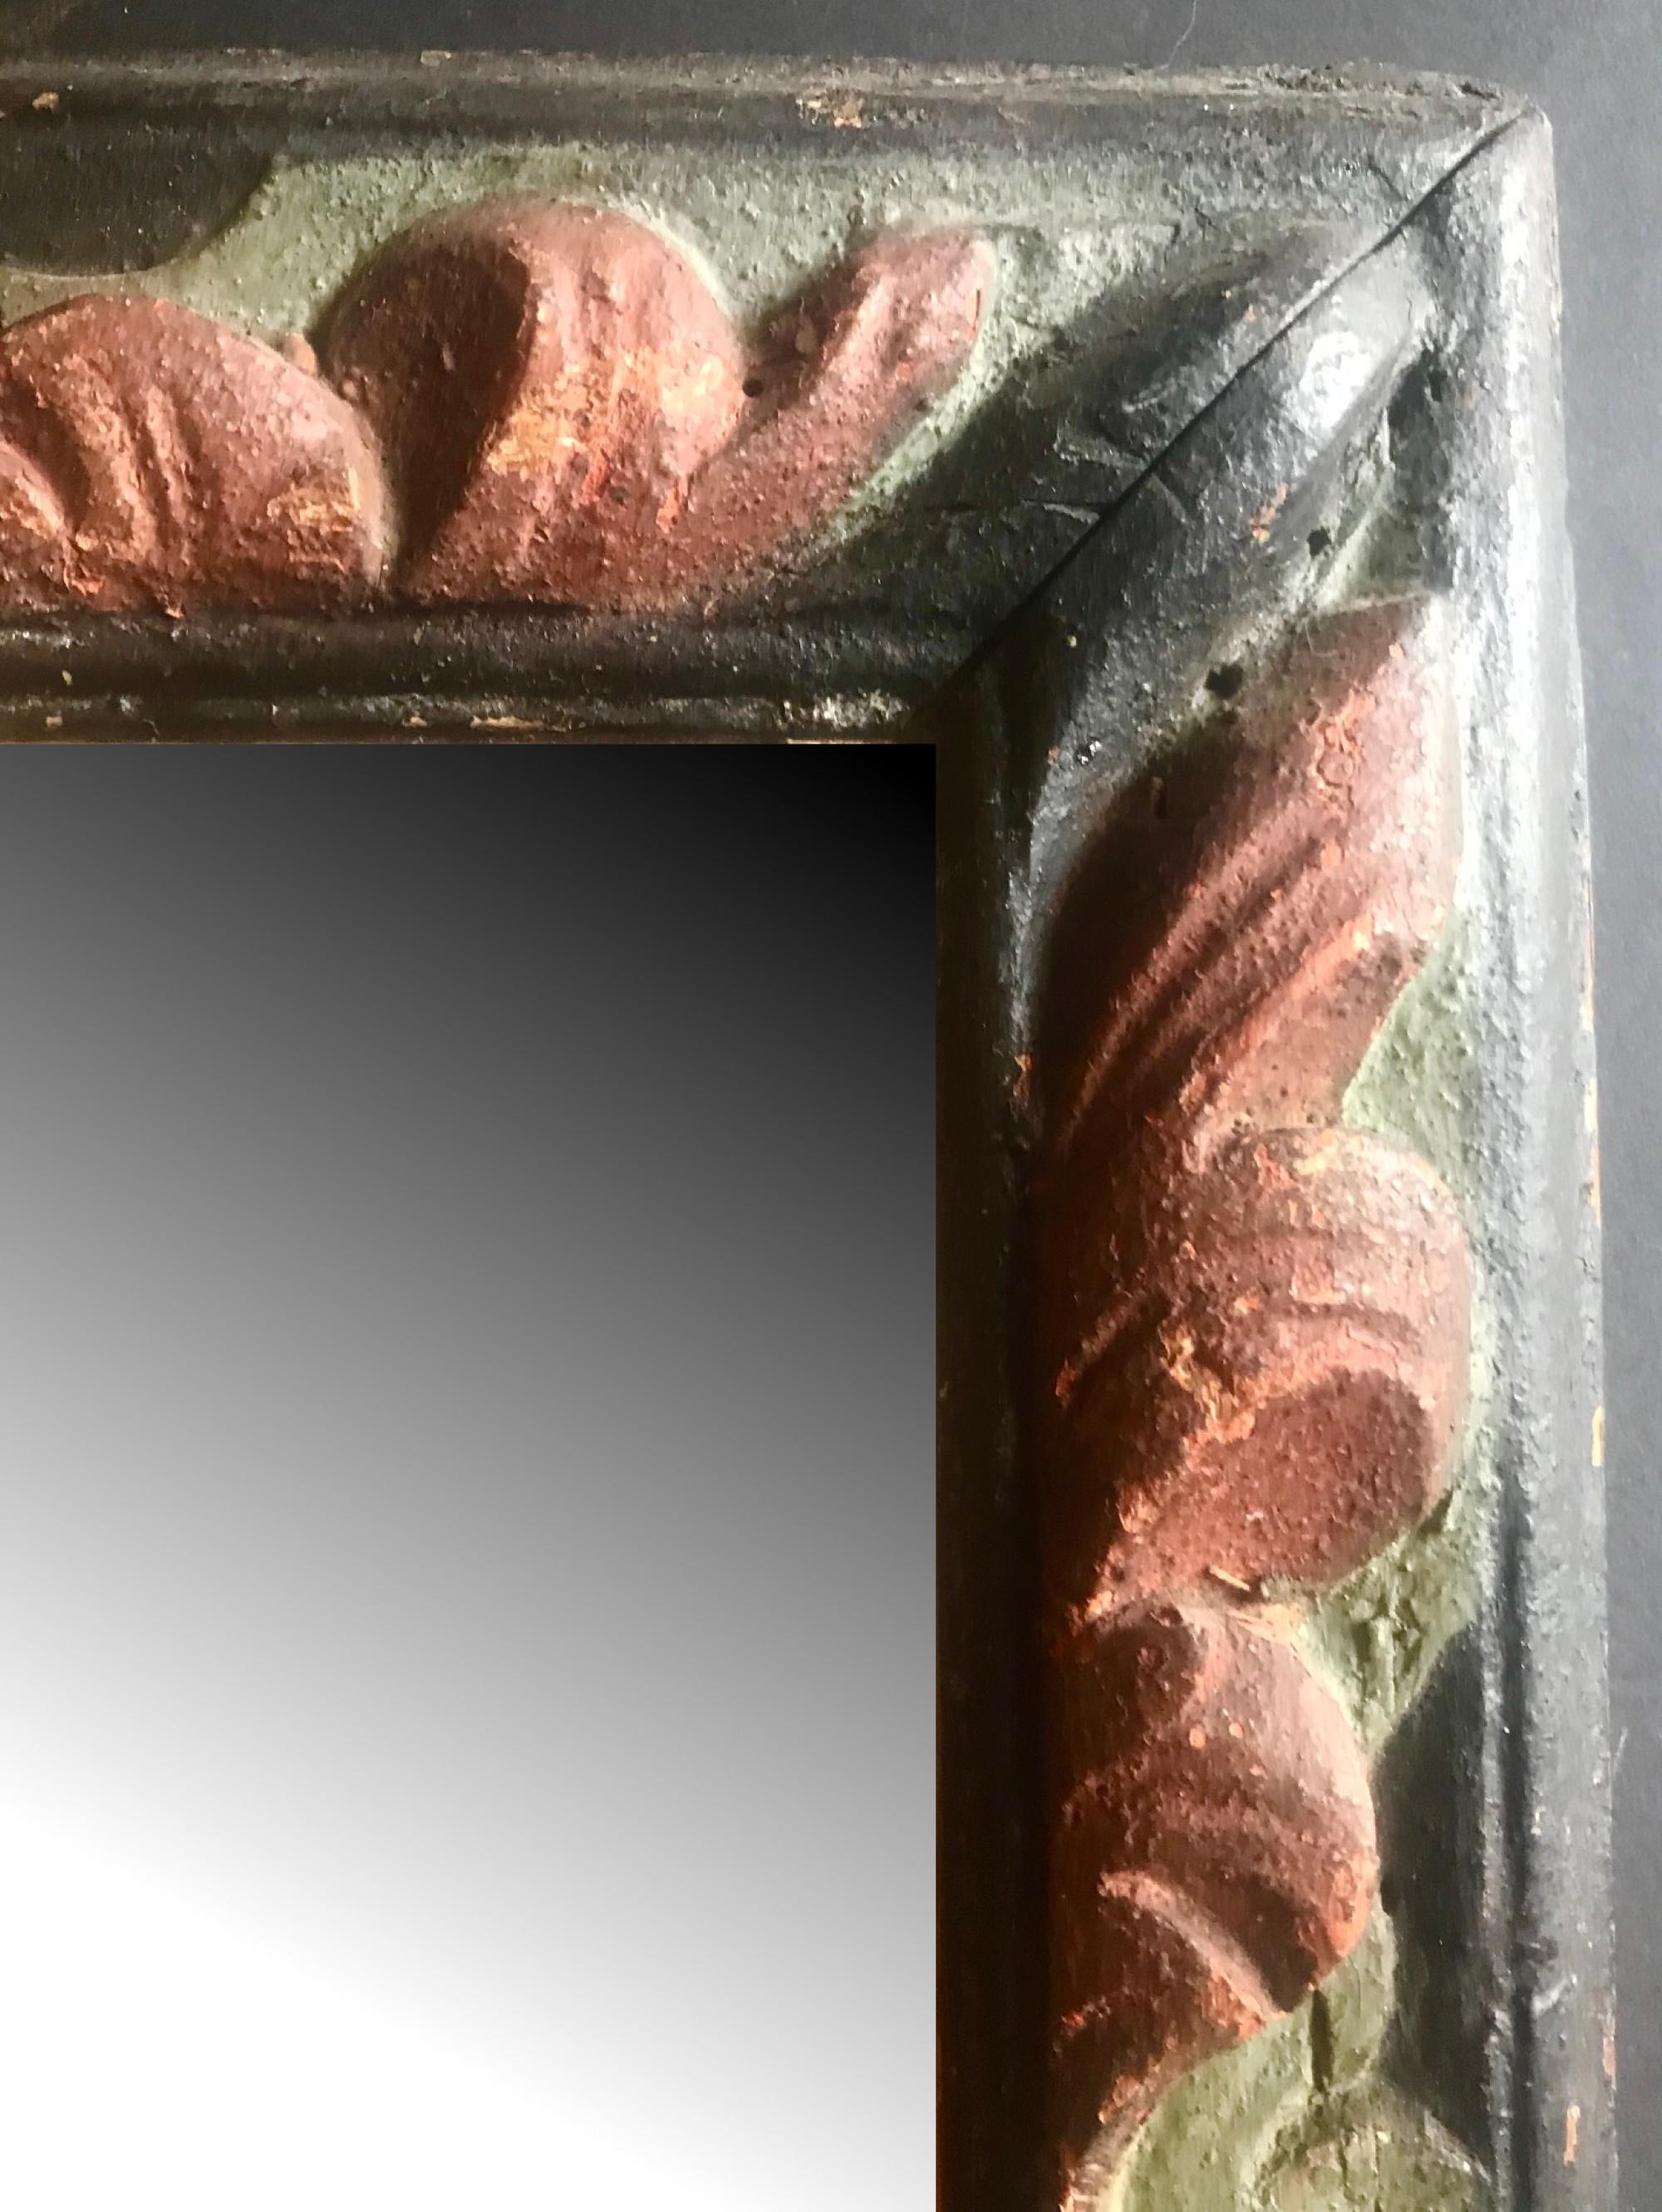 Miroir encadré du 18e siècle, sculpté à la main et peint en polychrome espagnol

Ce cadre baroque en bois est sculpté à la main et peint en polychromie. Le contraste entre le rouge et le vert sur un fond sombre est très efficace et idéal pour un